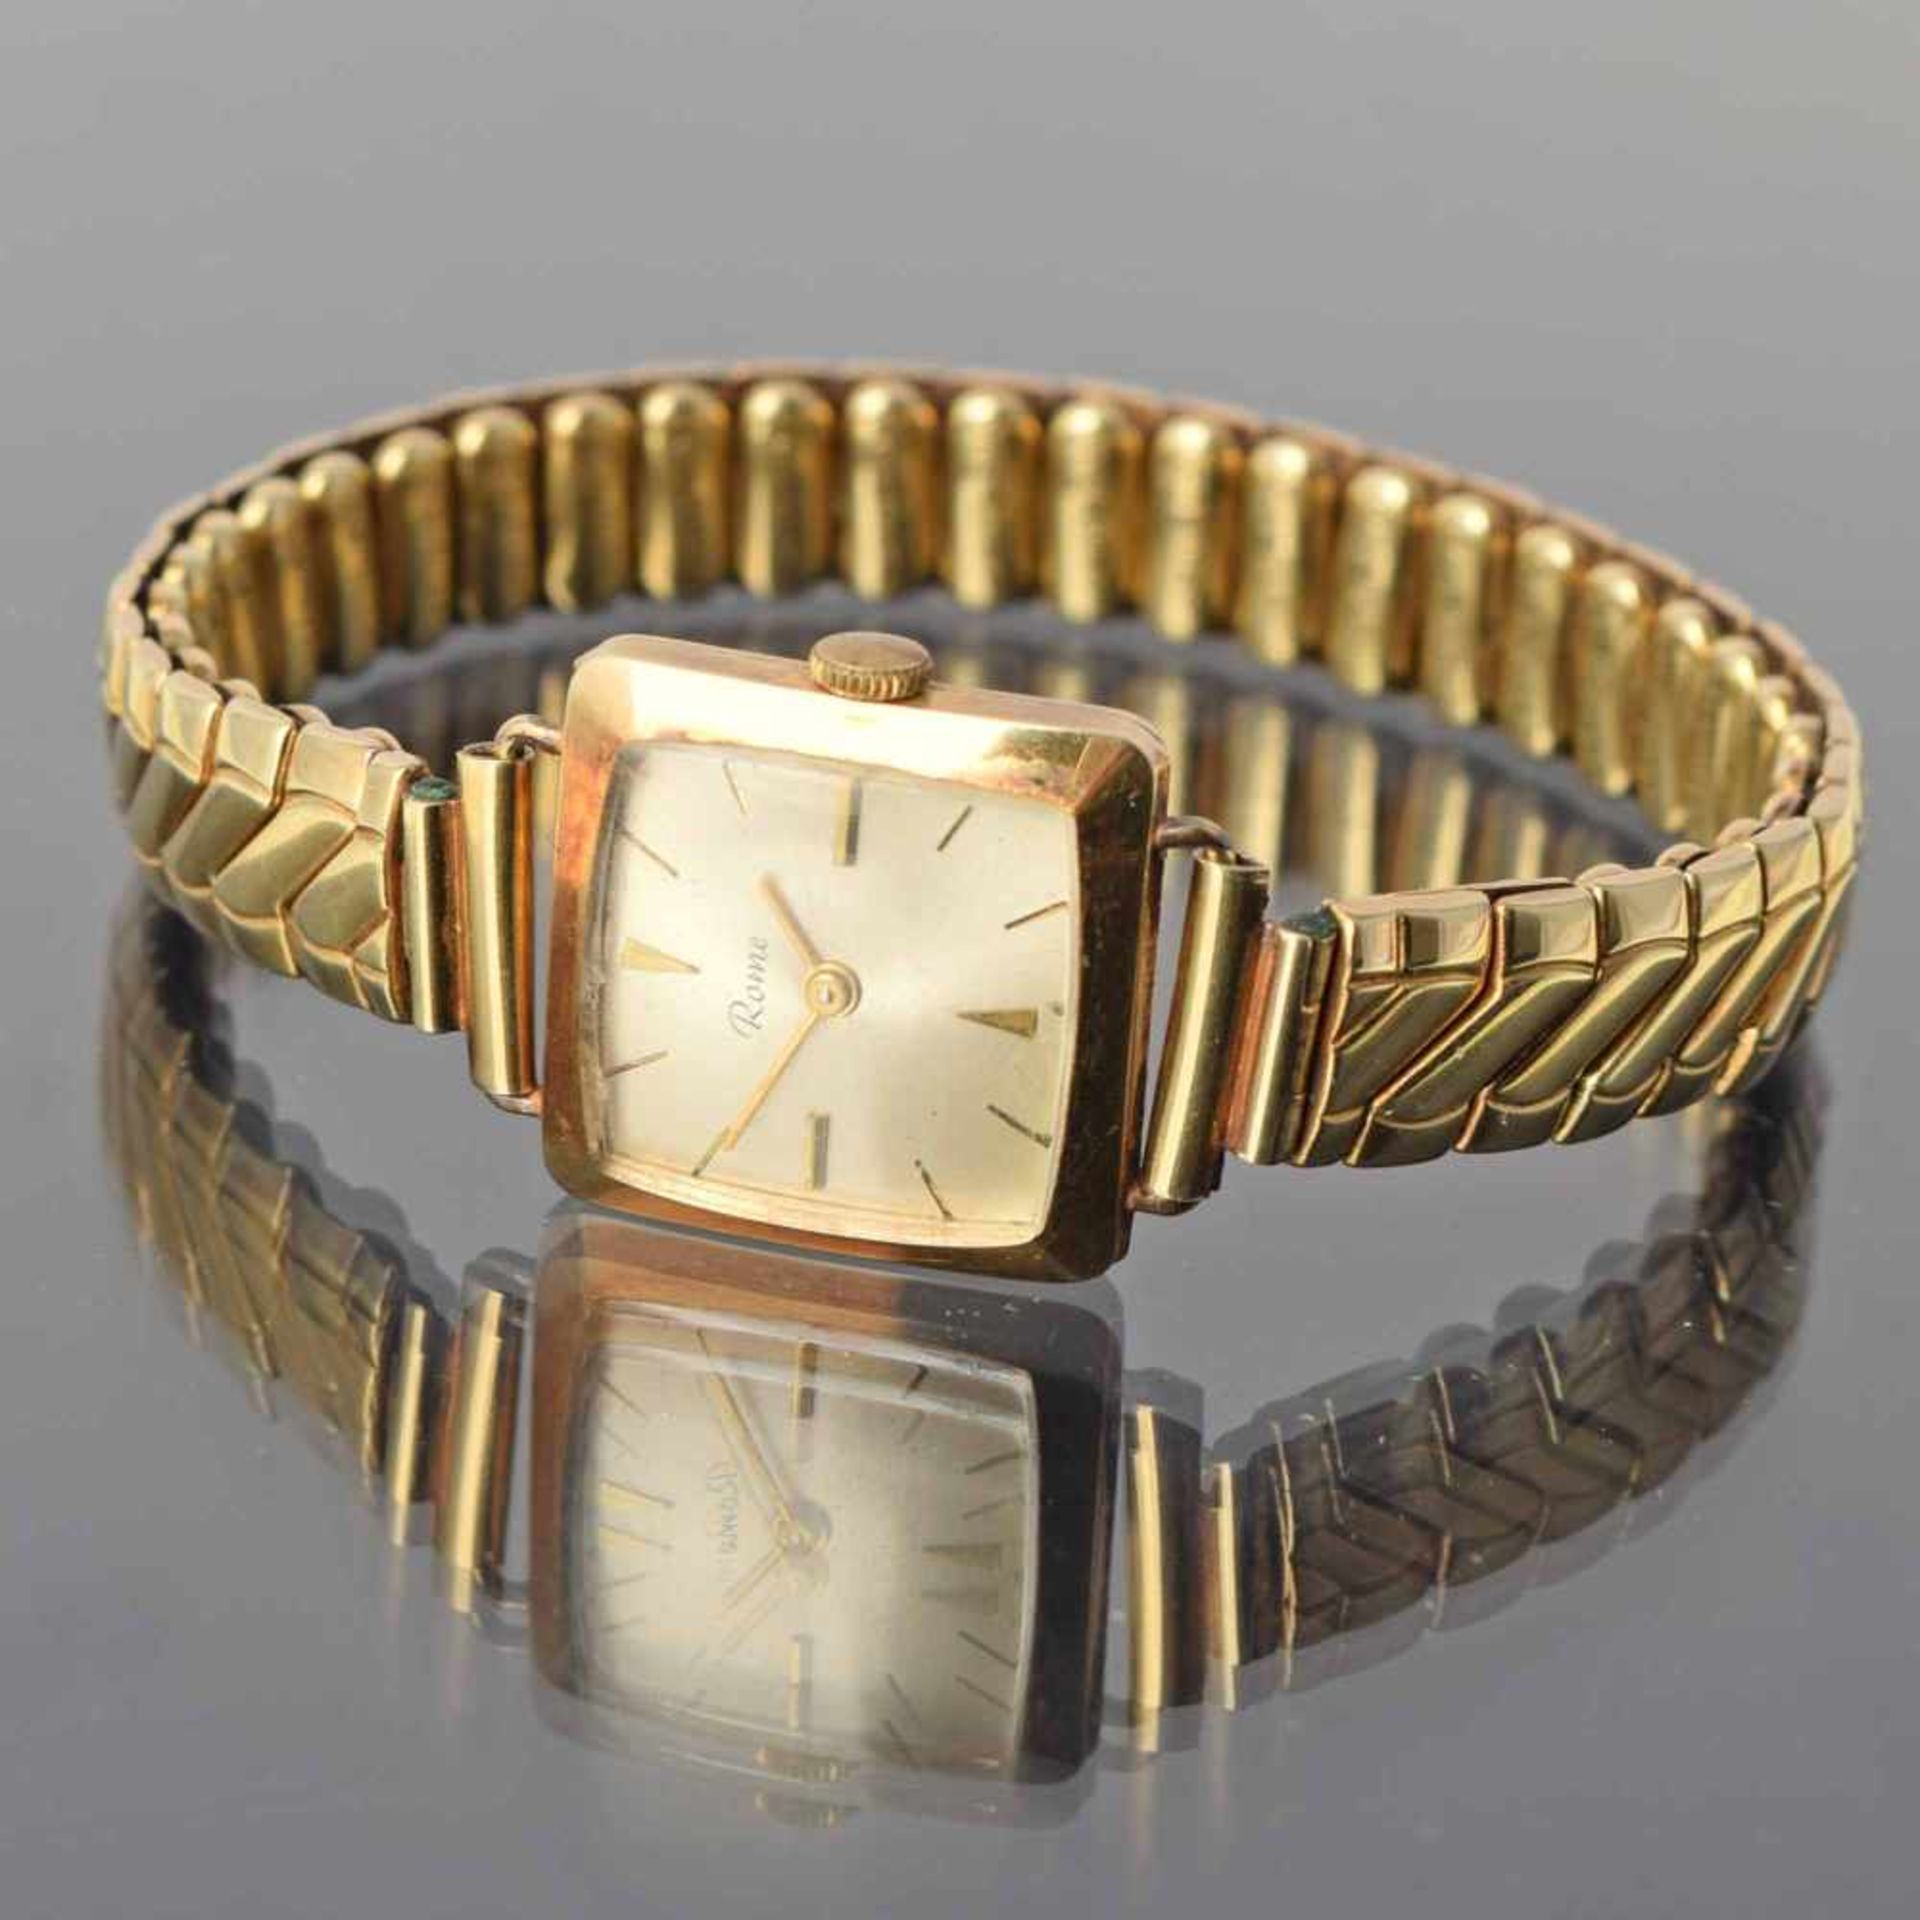 Damenarmbanduhr Gehäuse und Gliederflexarmband GG 585, rechteckiges Uhrengehäuse, mit Handaufzug, - Bild 3 aus 4